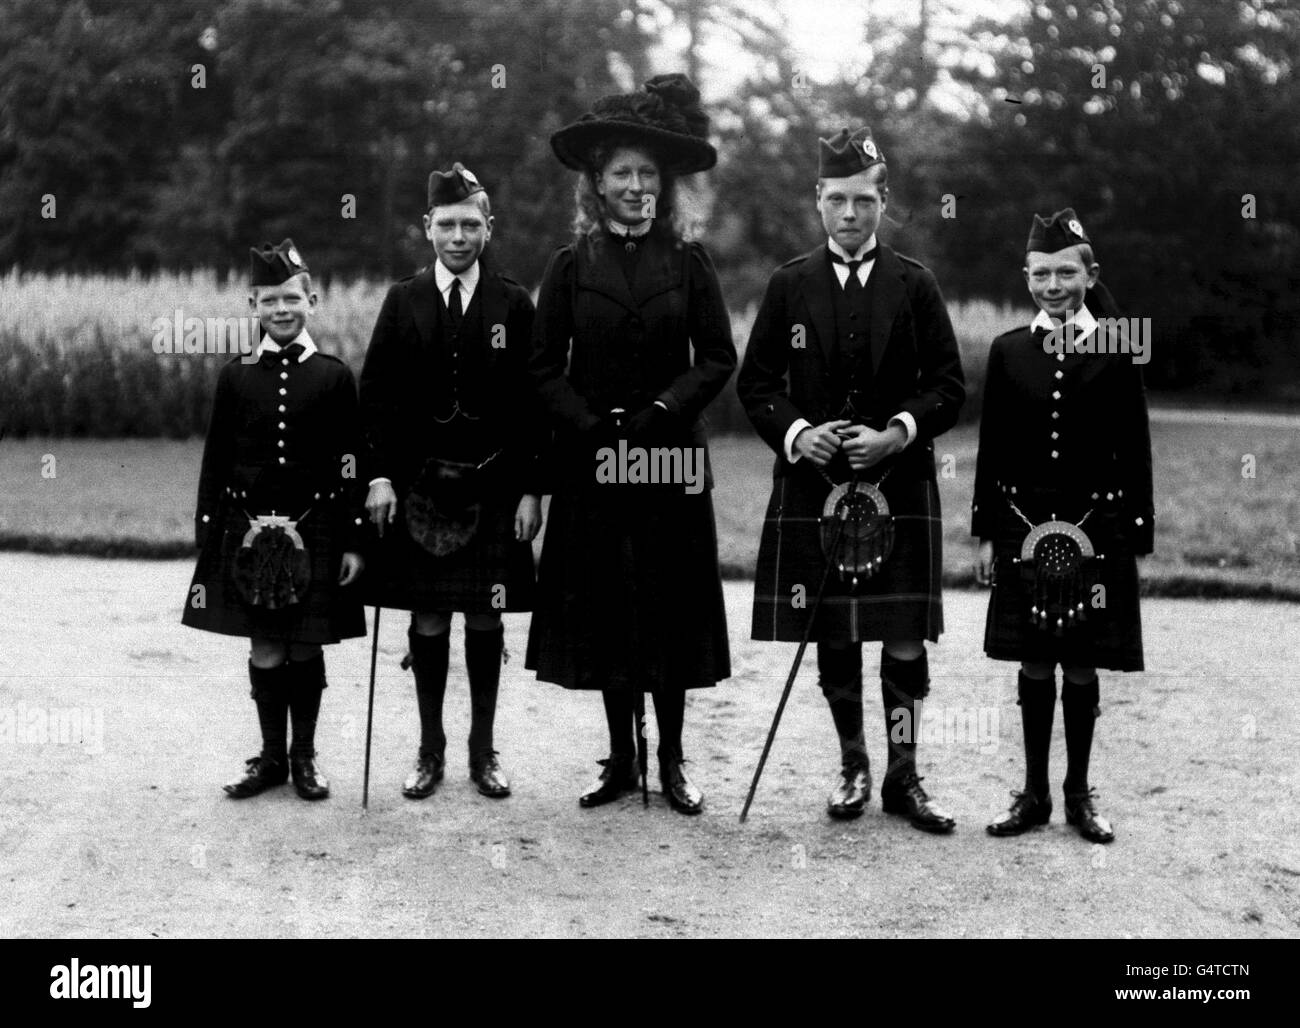 1910: Un archivo de la biblioteca de fotos del Príncipe George (más tarde Duque de Kent), el Príncipe Alberto (Jorge VI), la Princesa María (Princesa Real), el Príncipe Eduardo (Duque de Windsor) y el Príncipe Enrique (Duque de Gloucester) en los terrenos del Castillo Balmoral, Escocia, vestido de Highland. Foto de stock